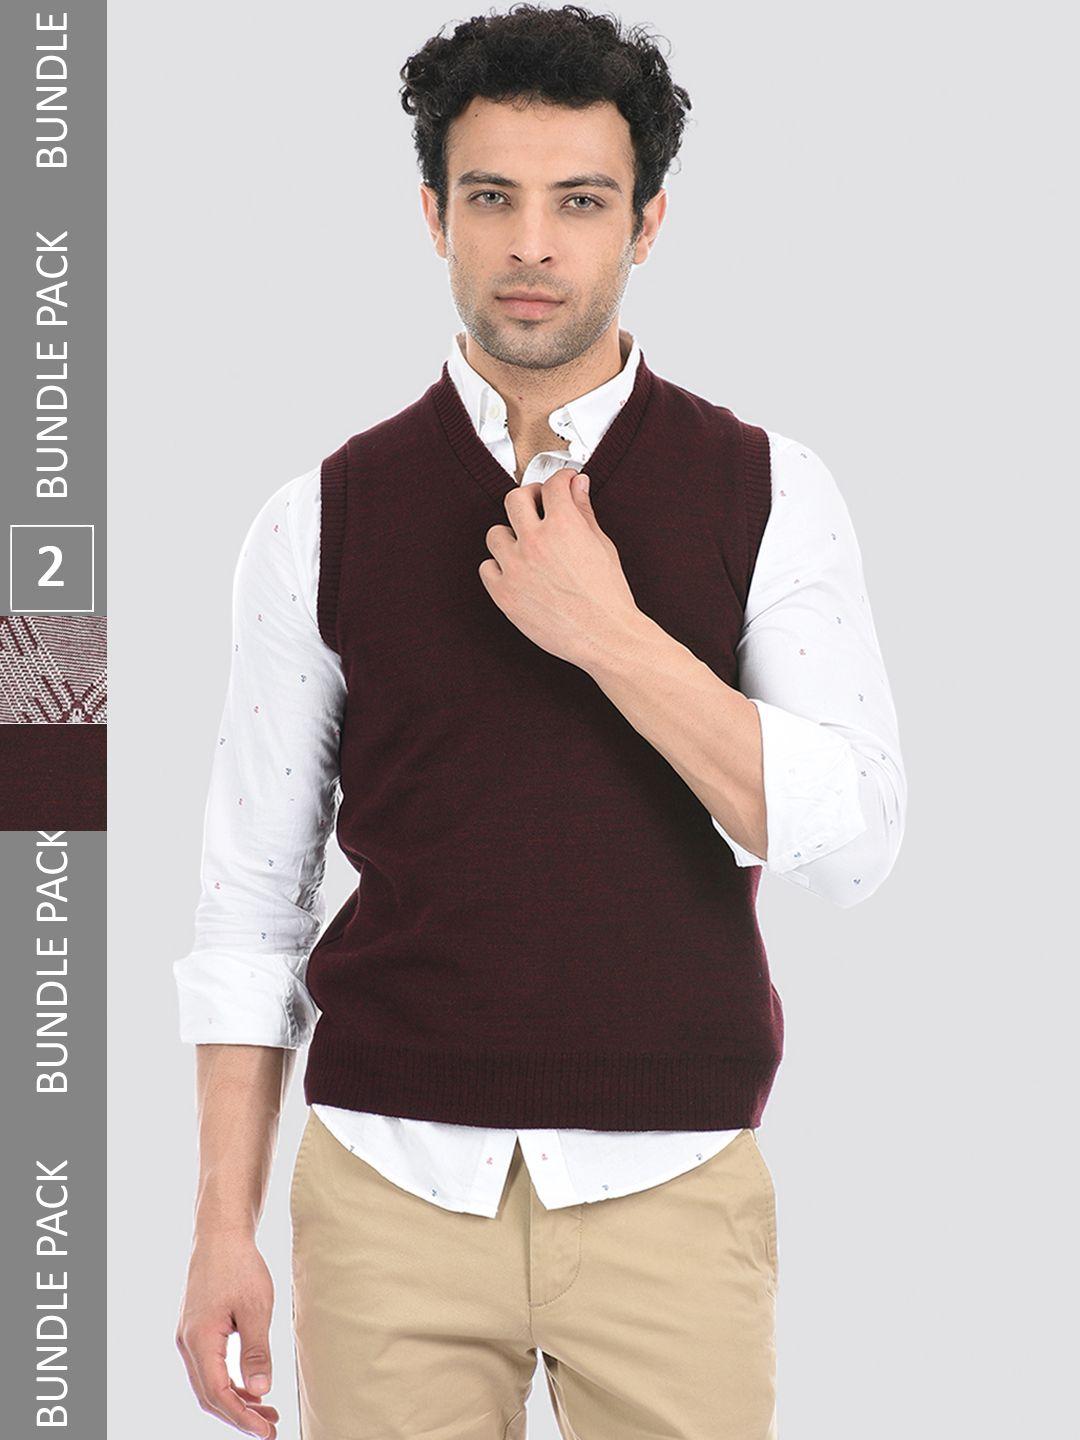 cloak-&-decker-by-monte-carlo-men-maroon-&-white-acrylic-sweater-vest